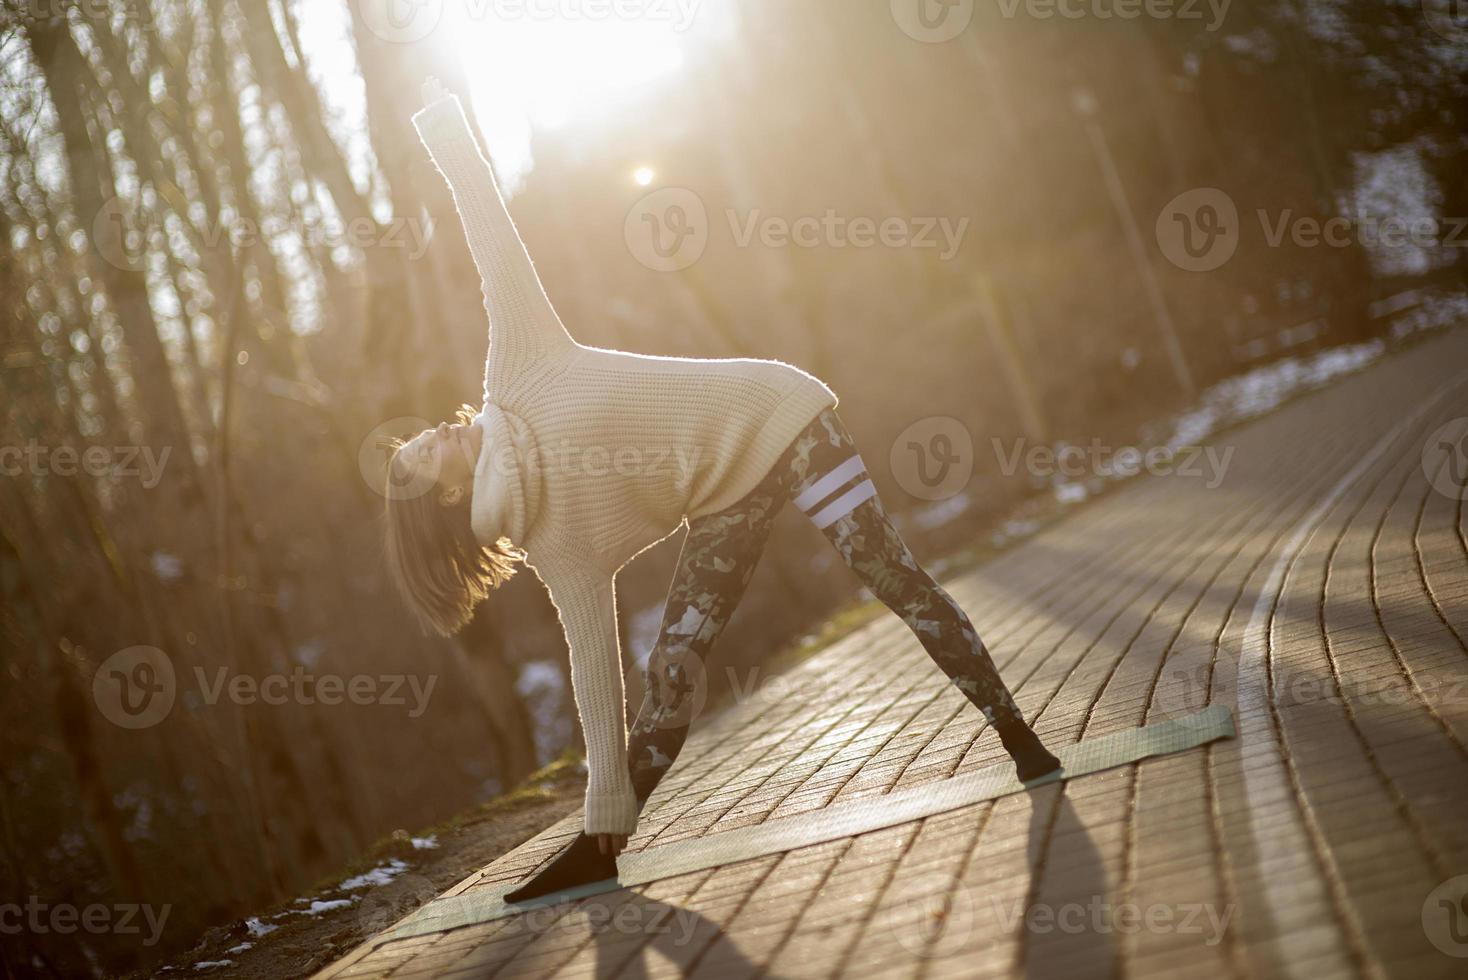 Une jeune femme athlétique effectue des exercices de yoga et de méditation à l'extérieur photo